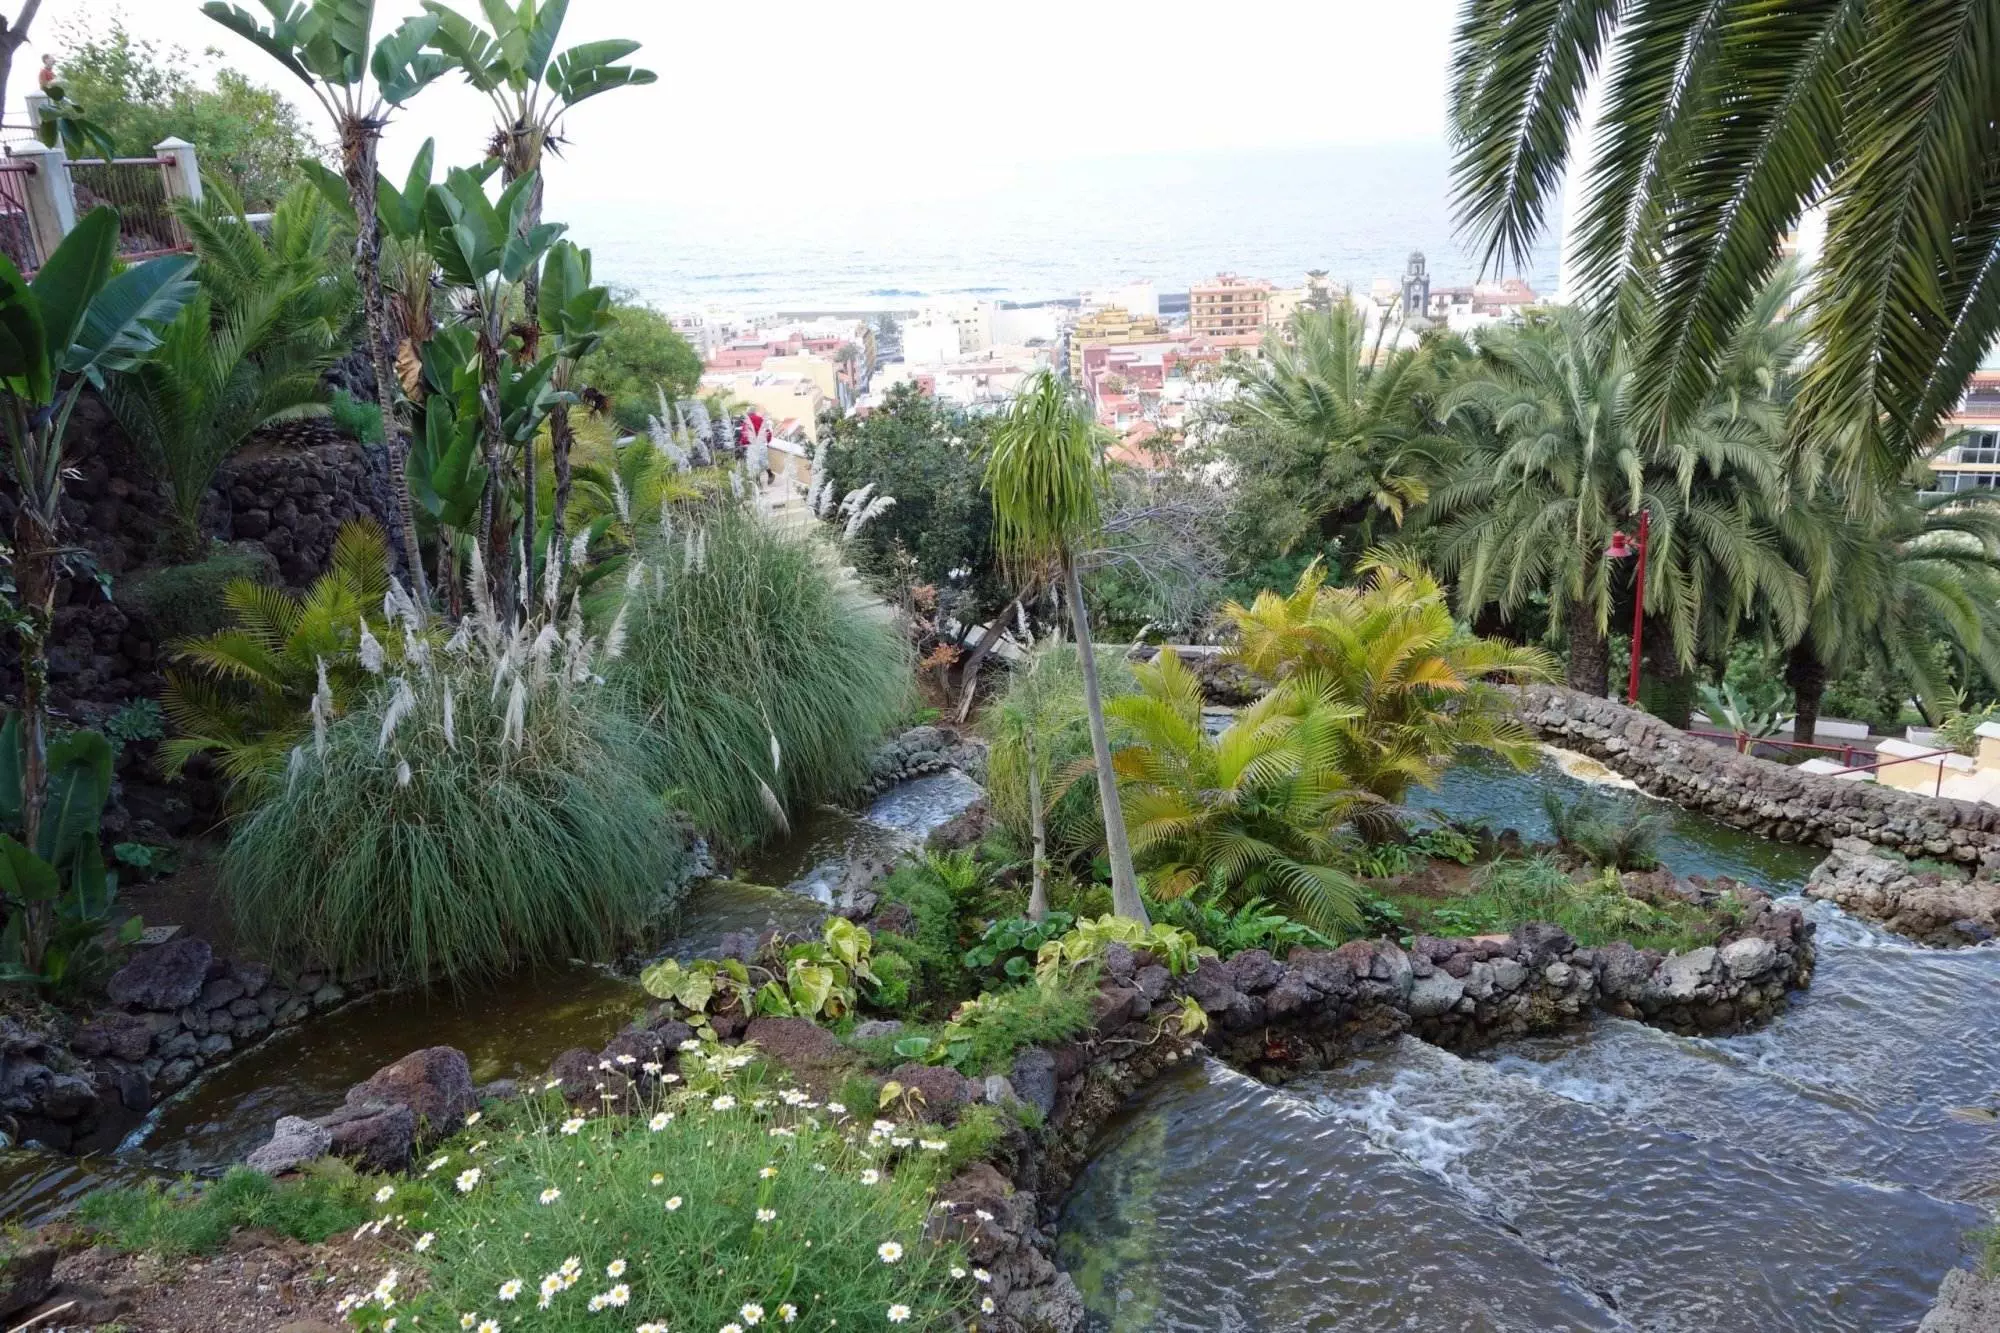 Ein malerischer Garten in Puerto de la Cruz mit einem ruhigen Bach, der sich durch die üppige Umgebung schlängelt.